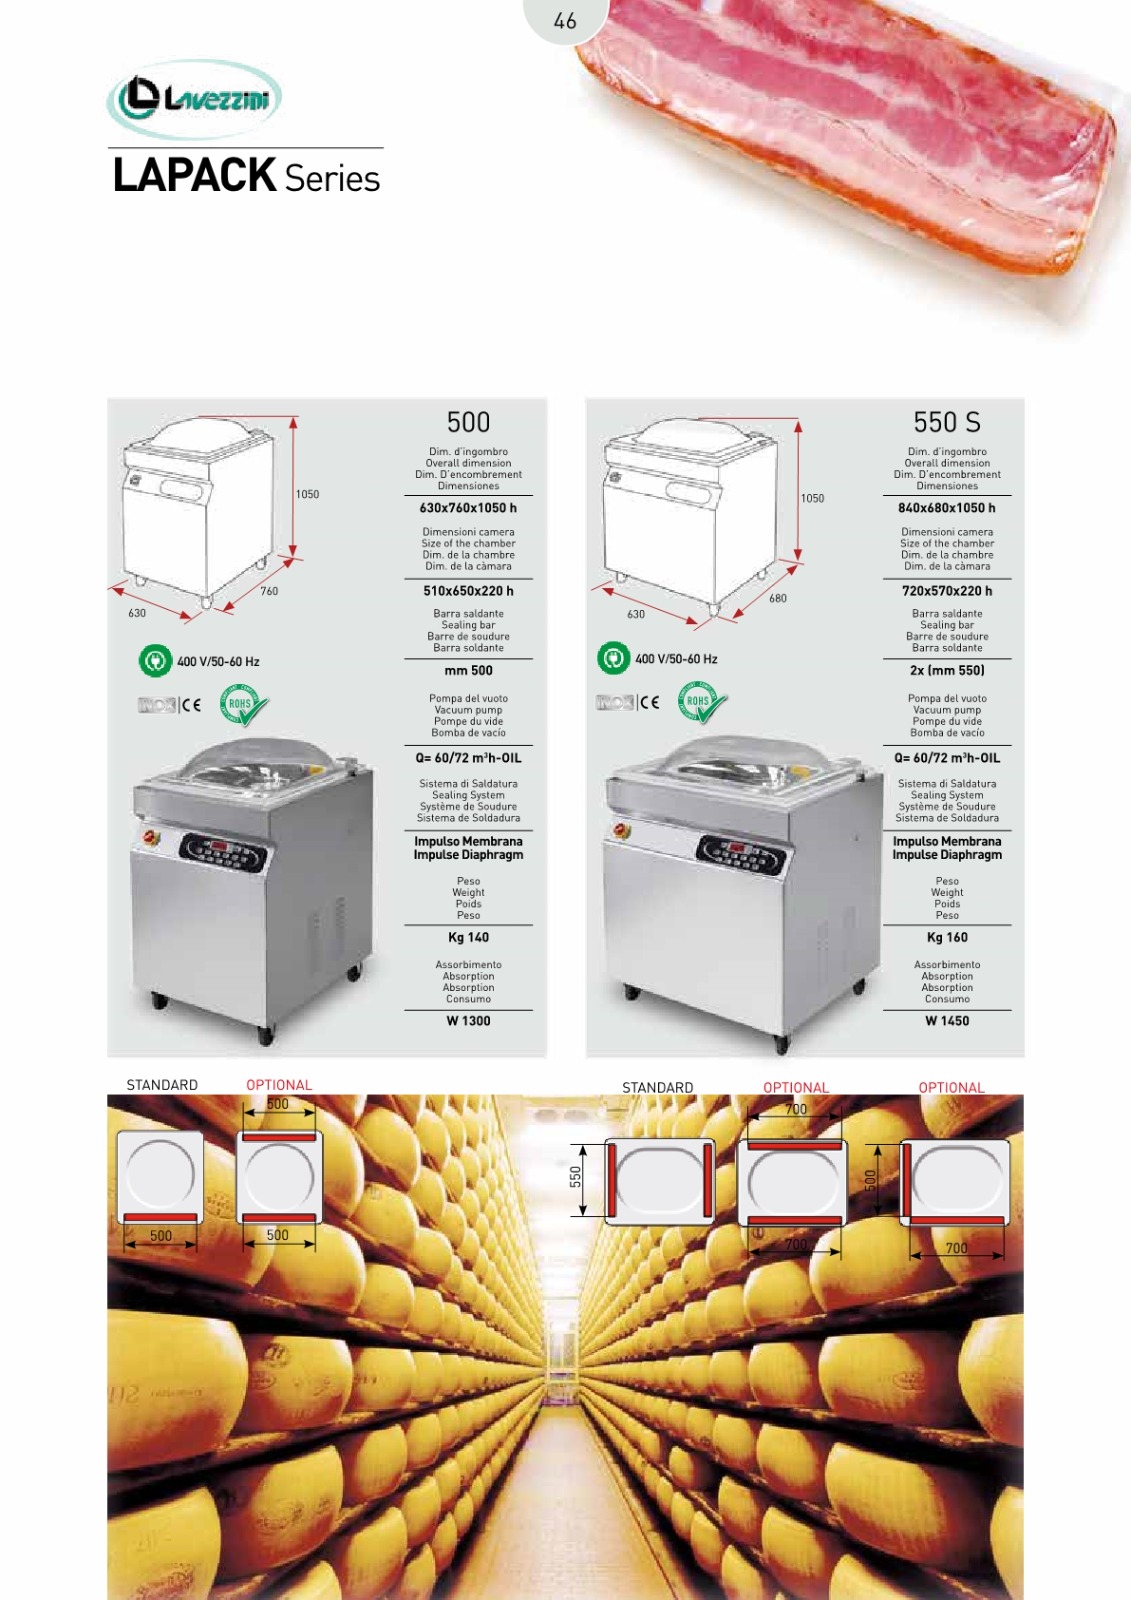 意大利Lavezzini食物真空機-座地型-桌上型-自動真空包裝機-食物抽真空機-食物真空包裝機-桌上型真空包裝機Vacuum-Packaging-Machine1